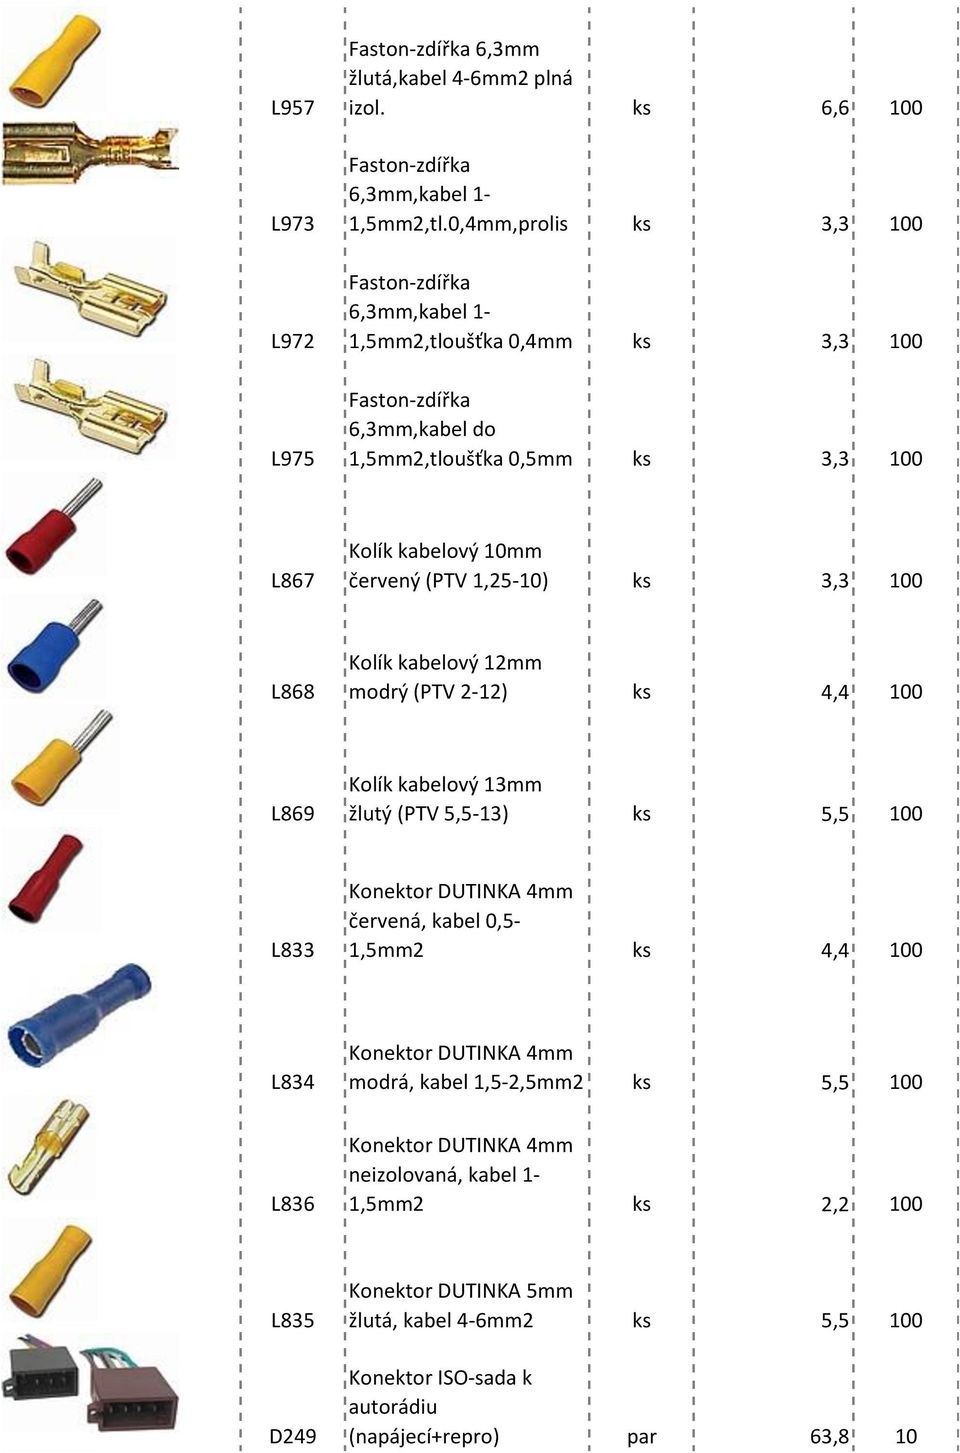 1,25-10) ks 3,3 100 L868 Kolík kabelový 12mm modrý (PTV 2-12) ks 4,4 100 L869 Kolík kabelový 13mm žlutý (PTV 5,5-13) ks 5,5 100 L833 Konektor DUTINKA 4mm červená, kabel 0,5-1,5mm2 ks